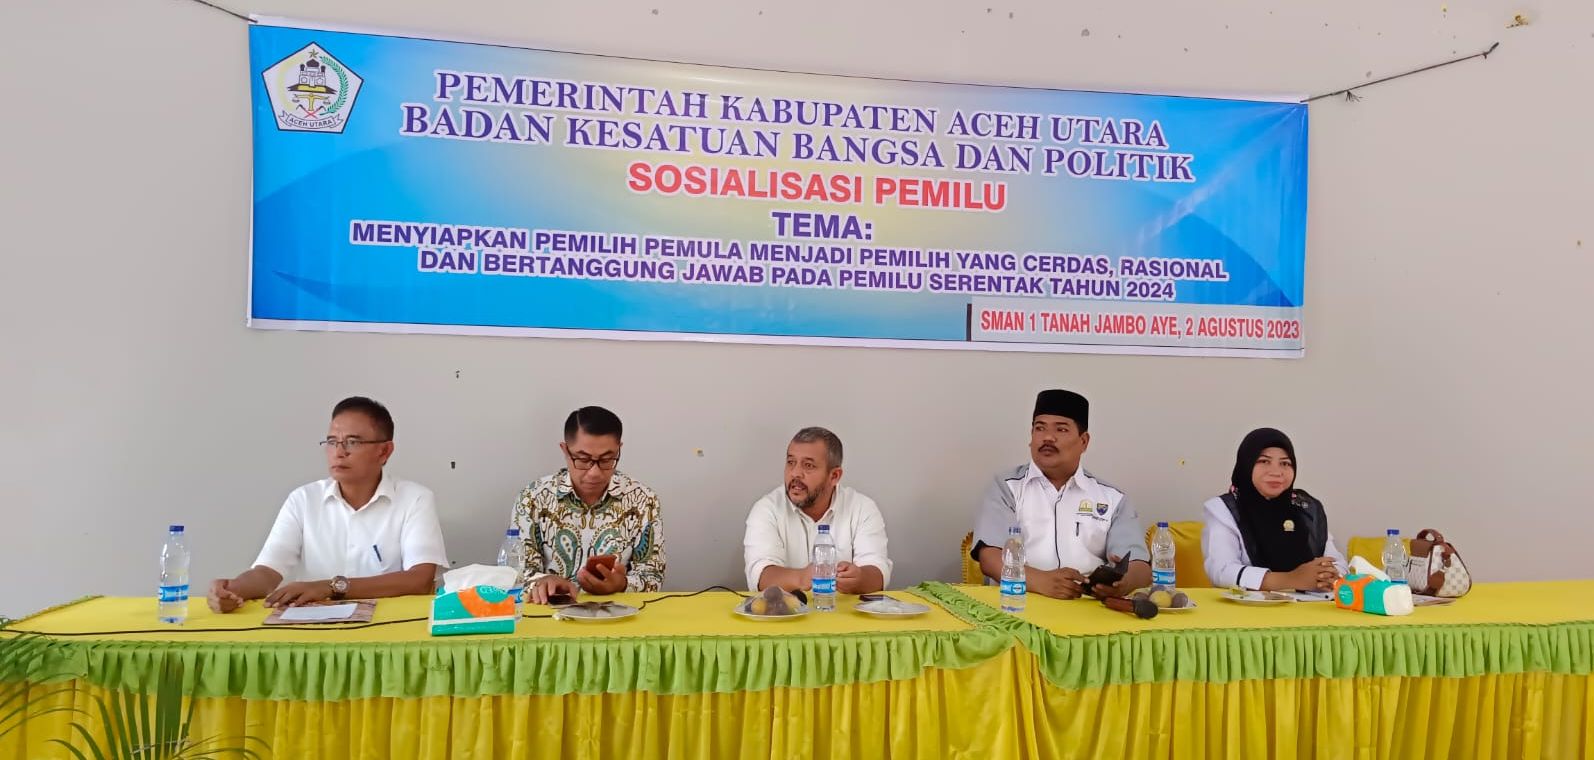 Sosialisasi pemilu yang dilaksanakan oleh Kesbangpol Aceh Utara di Aula SMA Negeri 1 Tanah Jambo Aye 